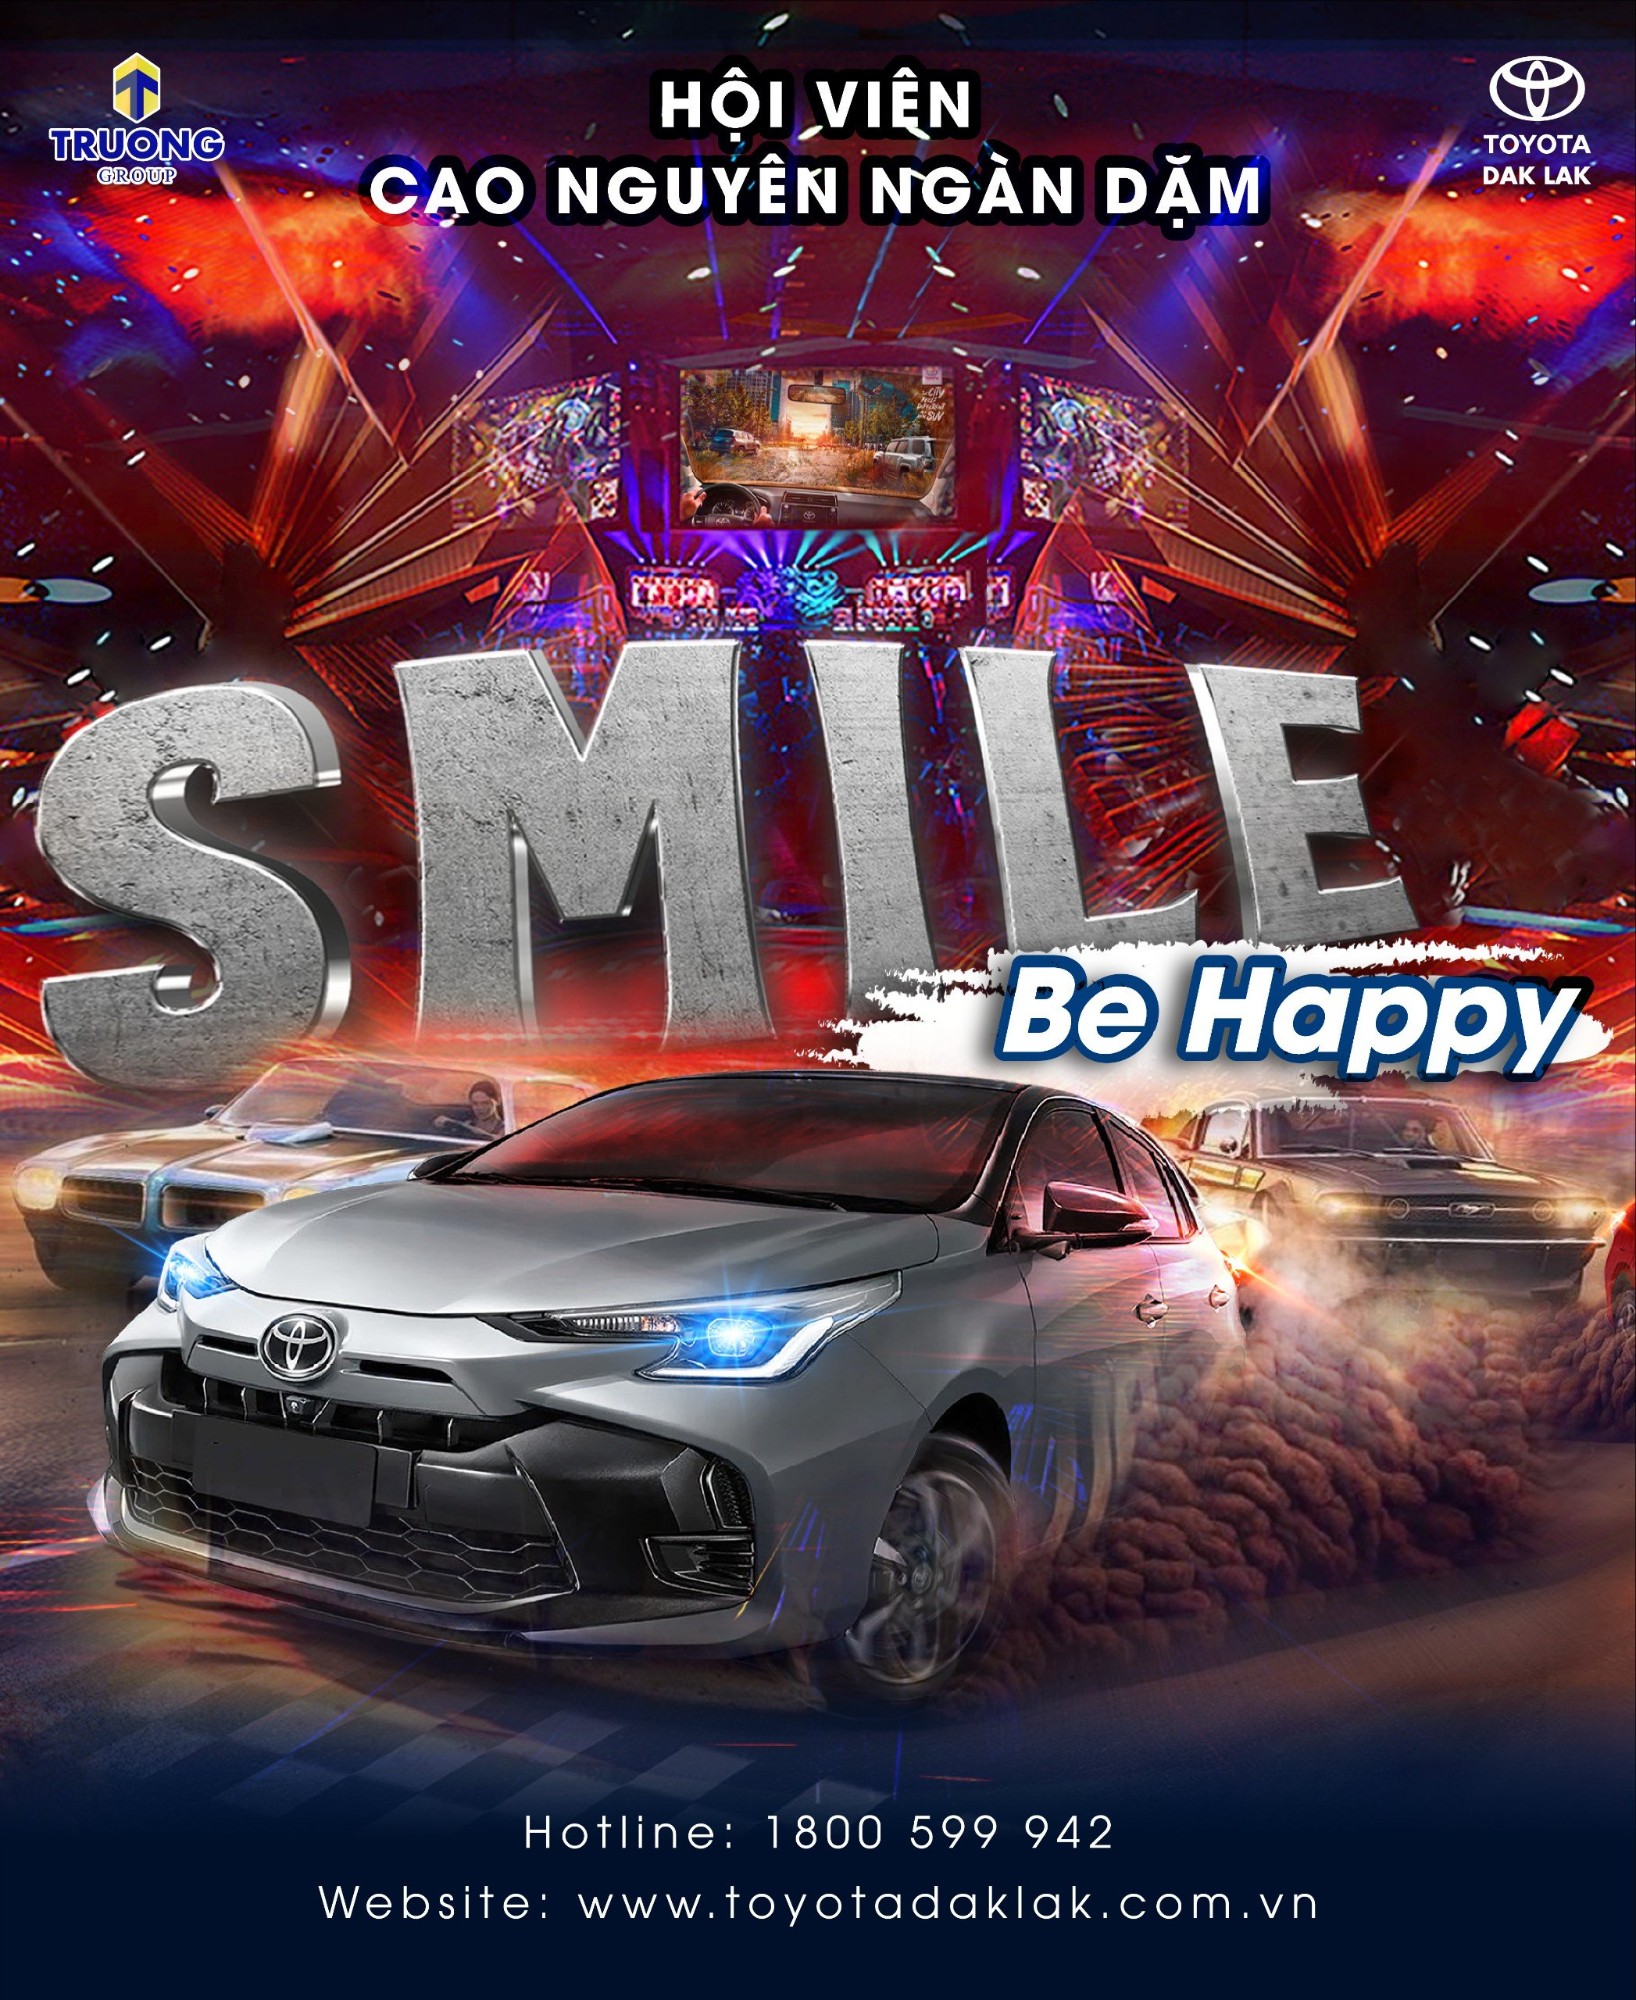 Khởi động chương trình "Smile - Be Happy": Hành trình chinh phục niềm vui cùng Cao Nguyên Ngàn Dặm